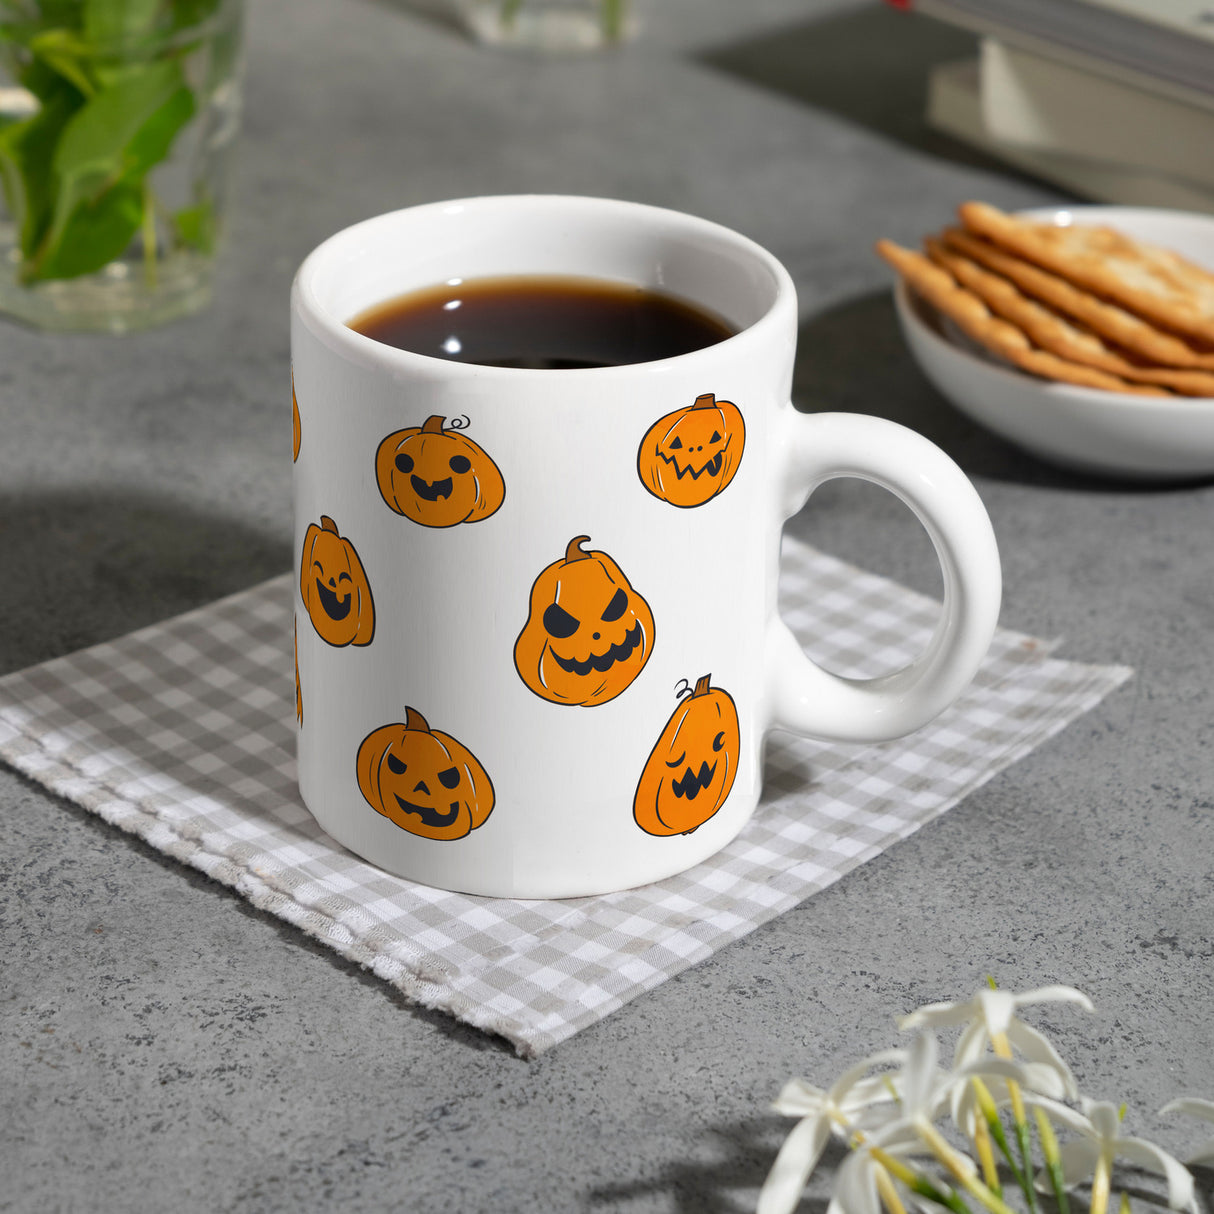 Kaffeebecher im Halloween Design - mit vielen lustigen geschnitzten Kürbisköpfen